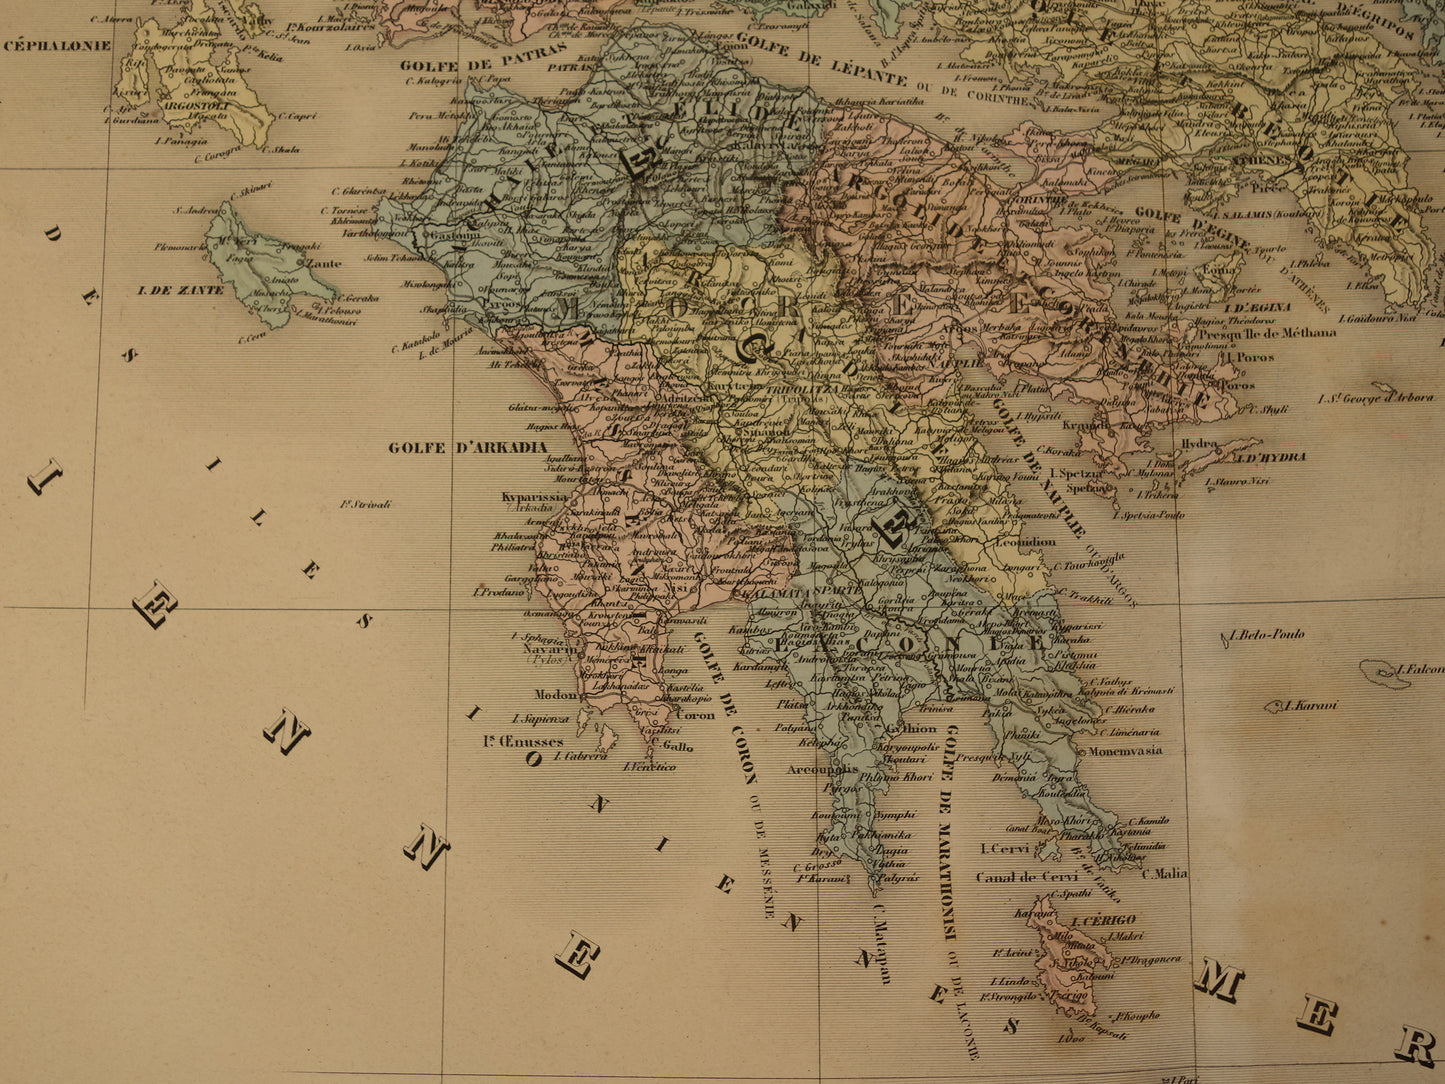 GRIEKENLAND grote oude landkaart van Griekenland 1880 Prachtige originele handgekleurde antieke kaart